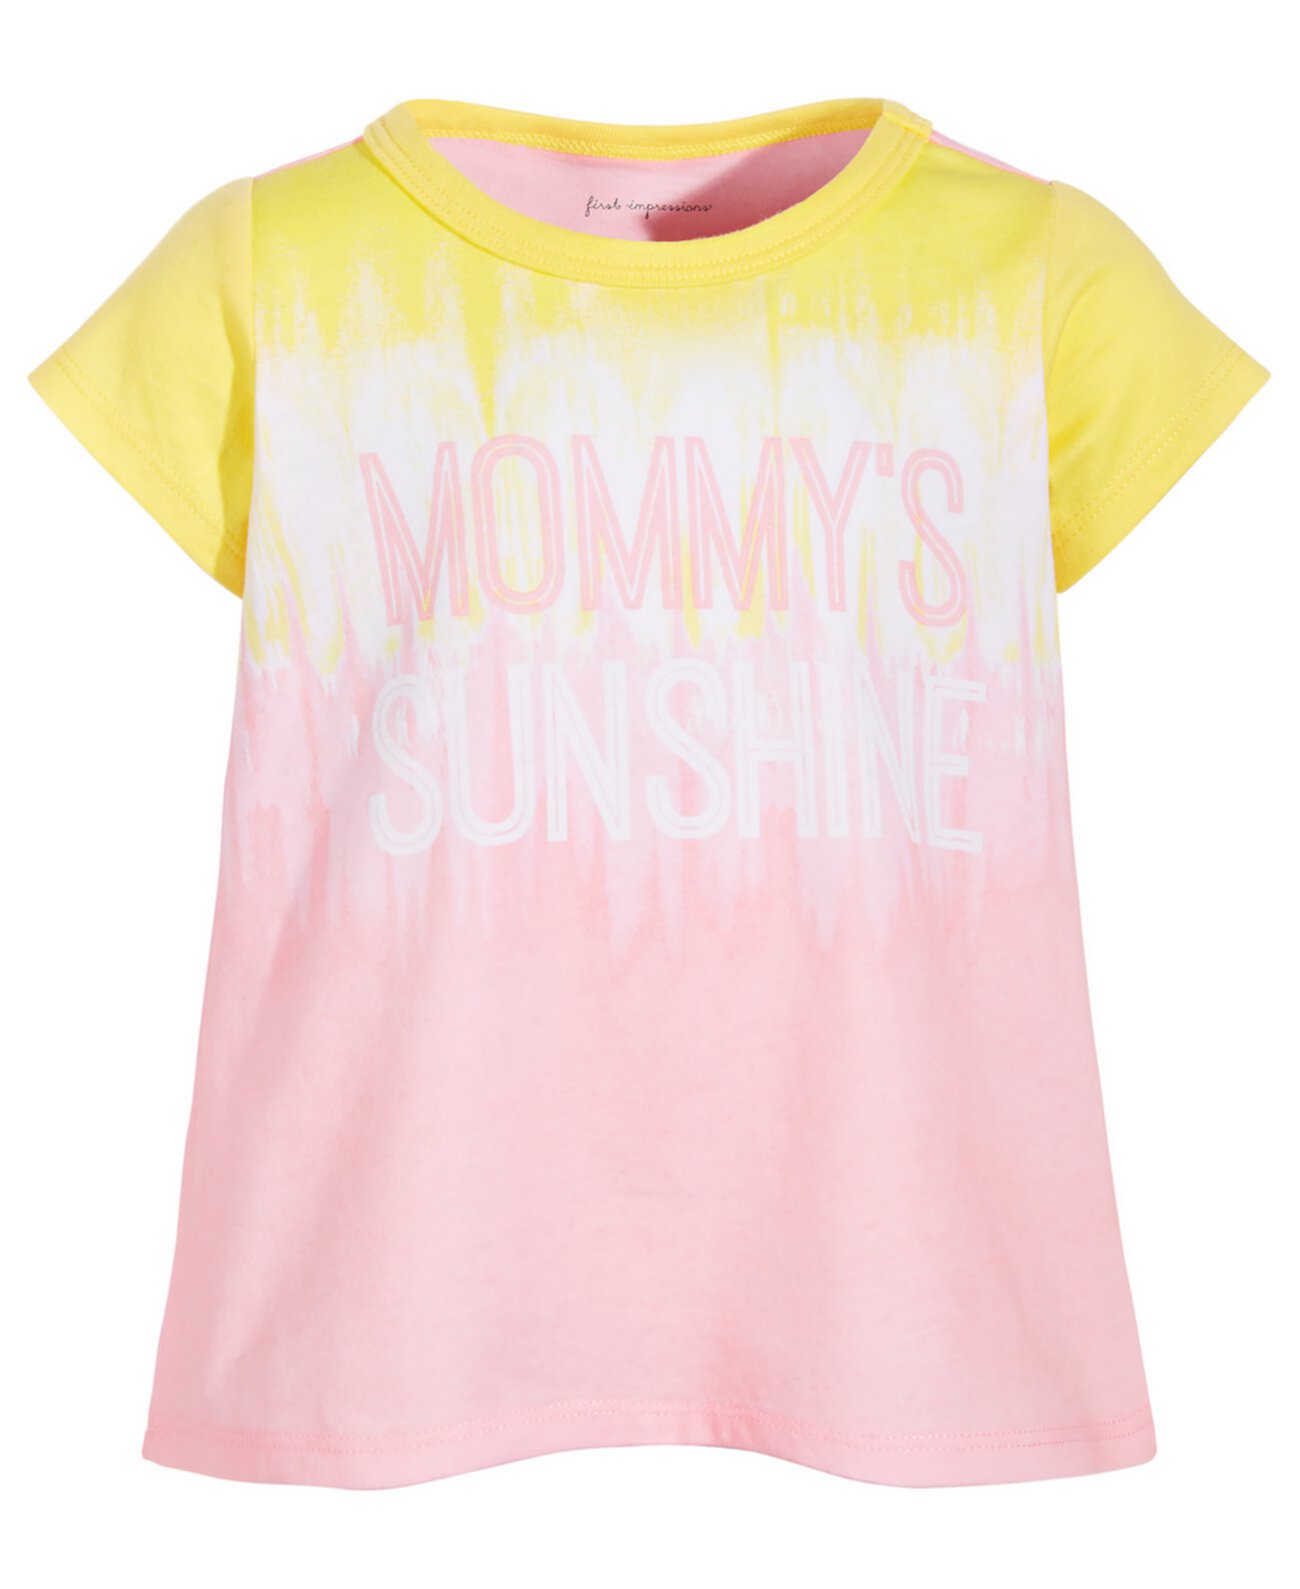 Футболка Baby Girls Mommy's Sunshine, созданная для Macy's First Impressions